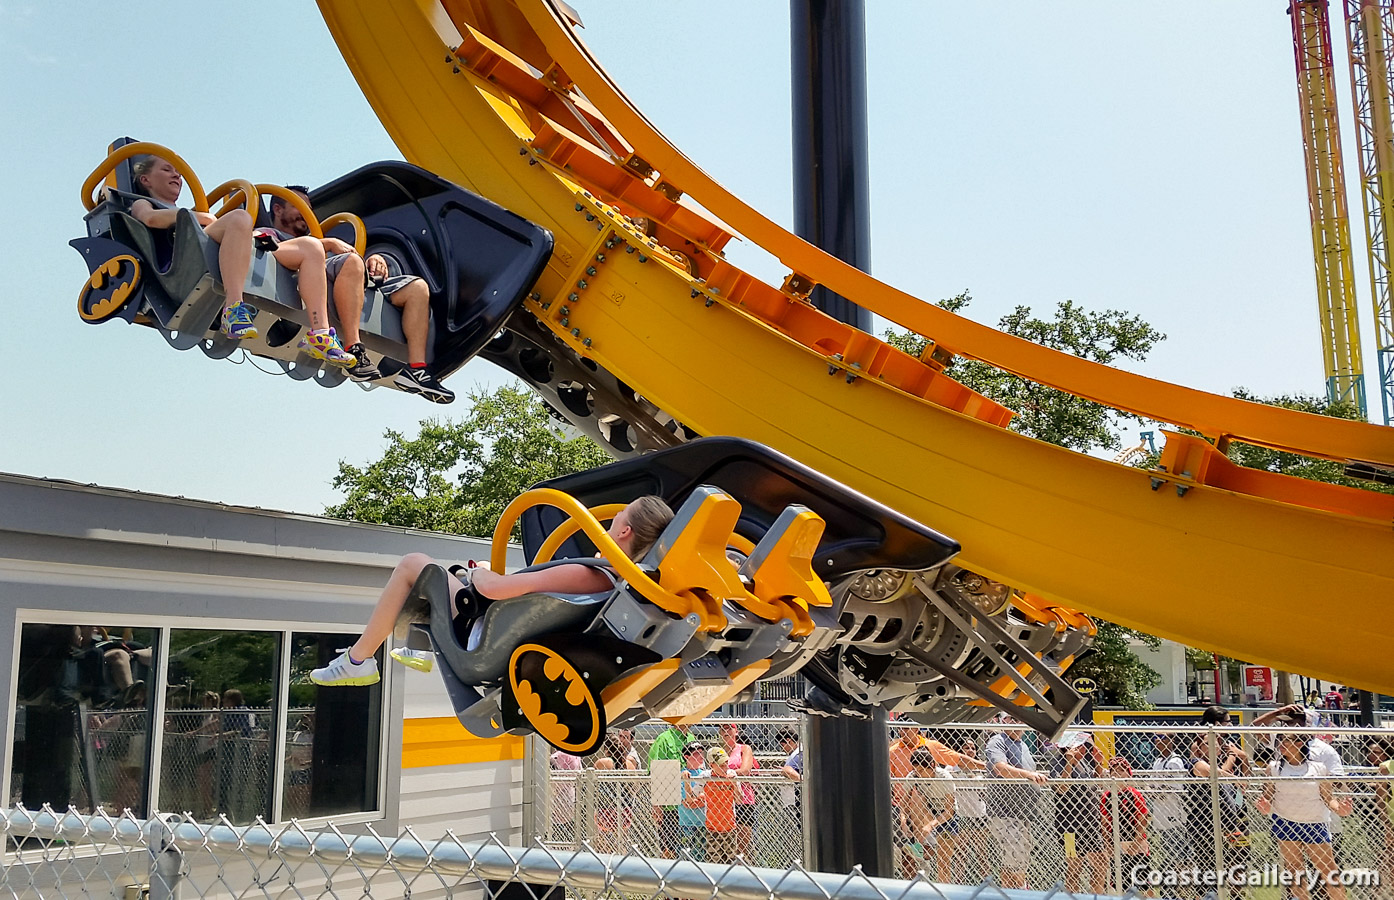 Batman: The Ride at Six Flags Fiesta Texas